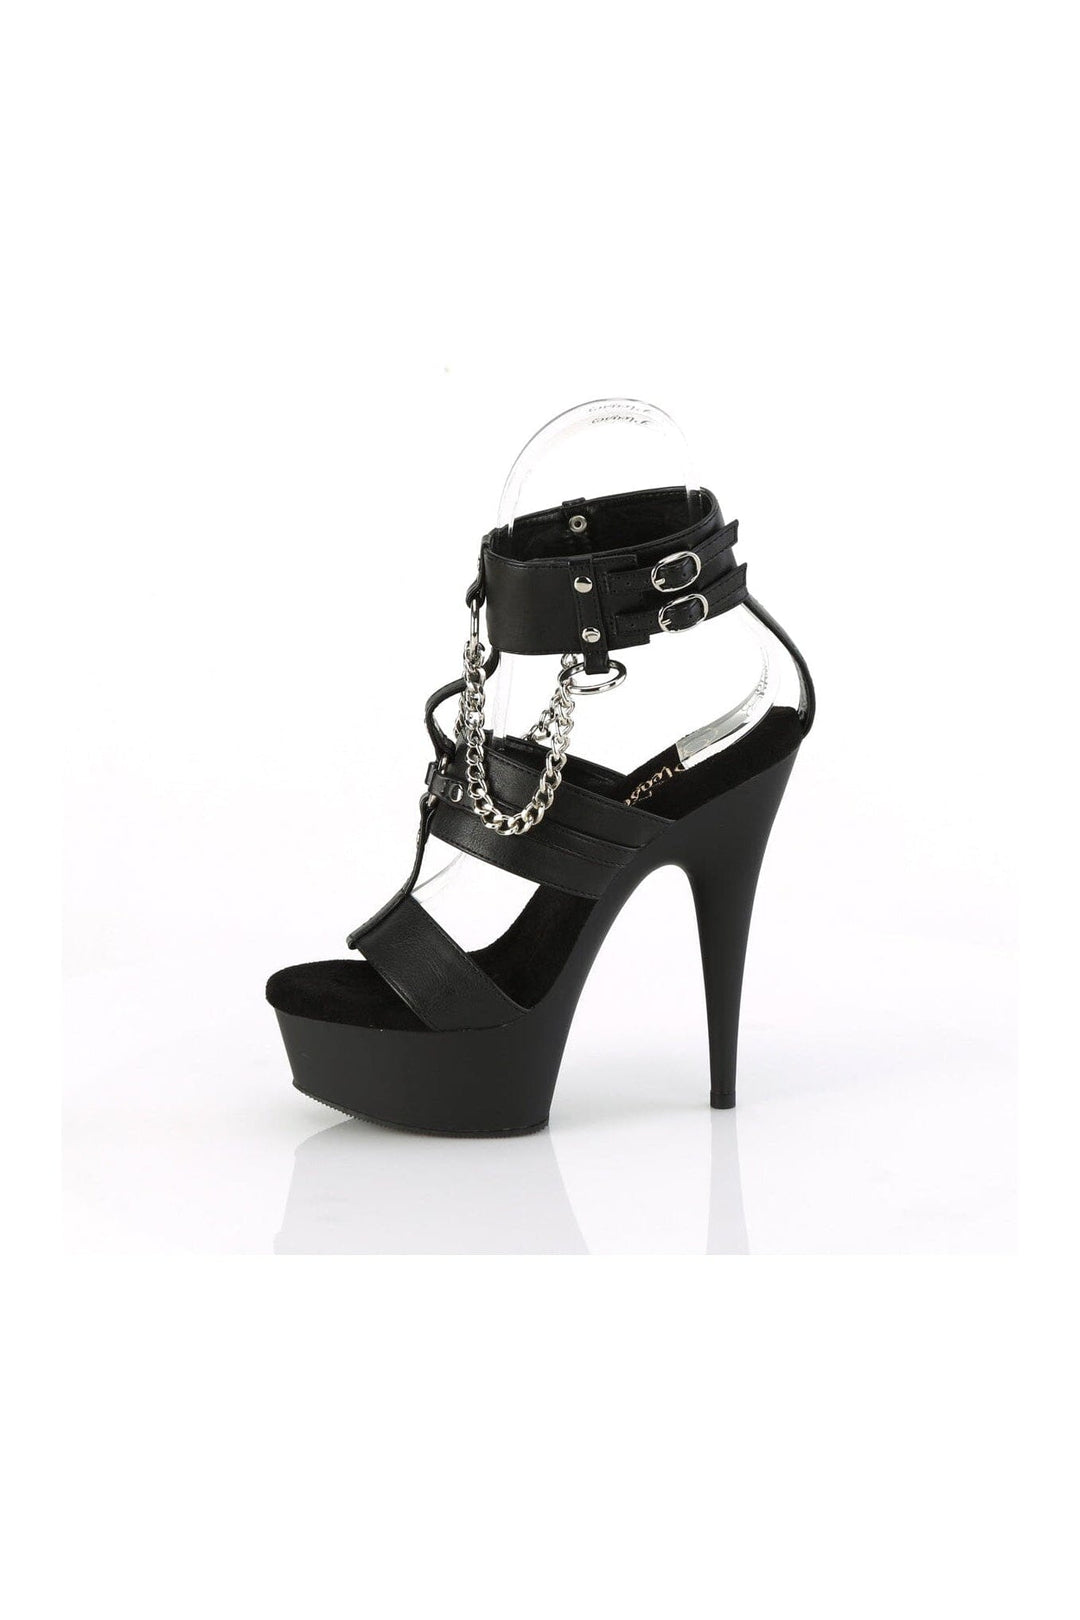 DELIGHT-661 Black Faux Leather Sandal-Sandals-Pleaser-SEXYSHOES.COM